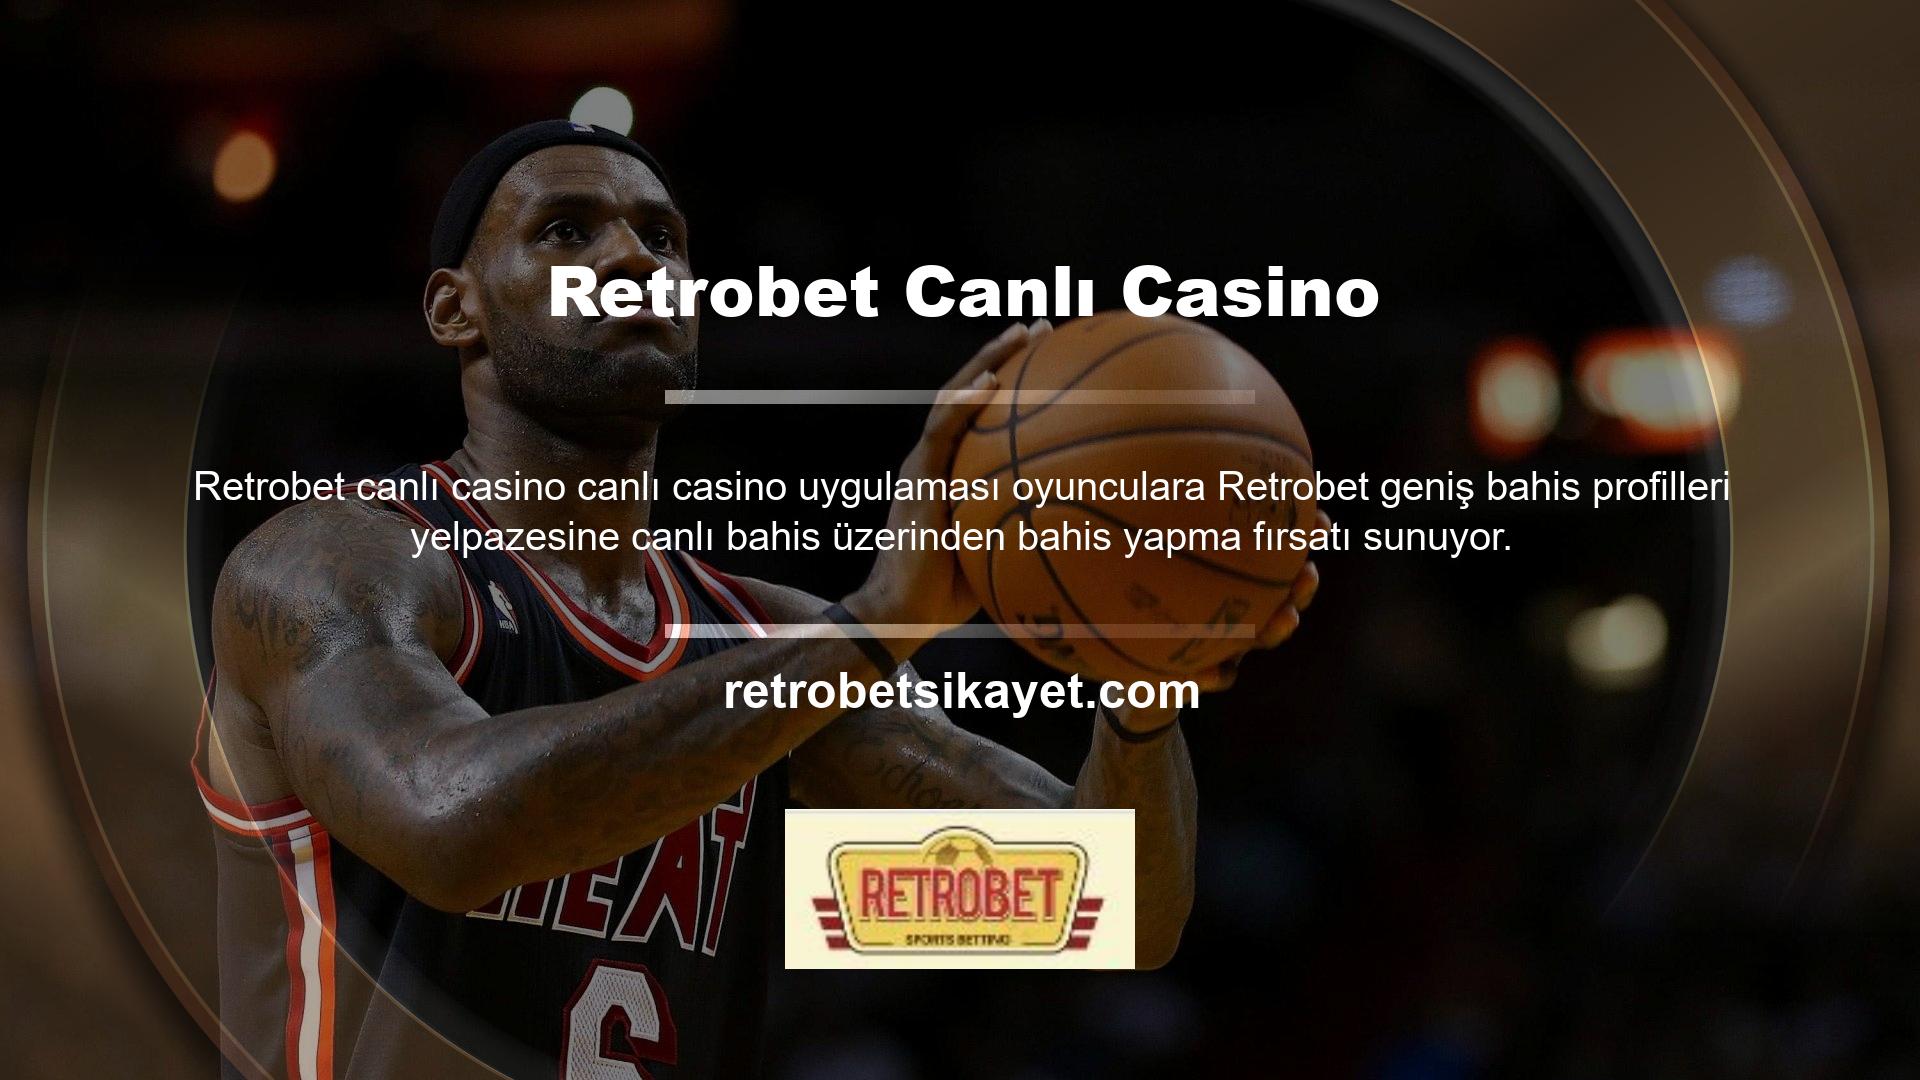 Retrobet Canlı Casino uygulamasının kullanıcılarına sunduğu oyun seçeneklerinden bazıları şunlardır: Seçenekler arasında blackjack, bakara ve rulet bulunmaktadır